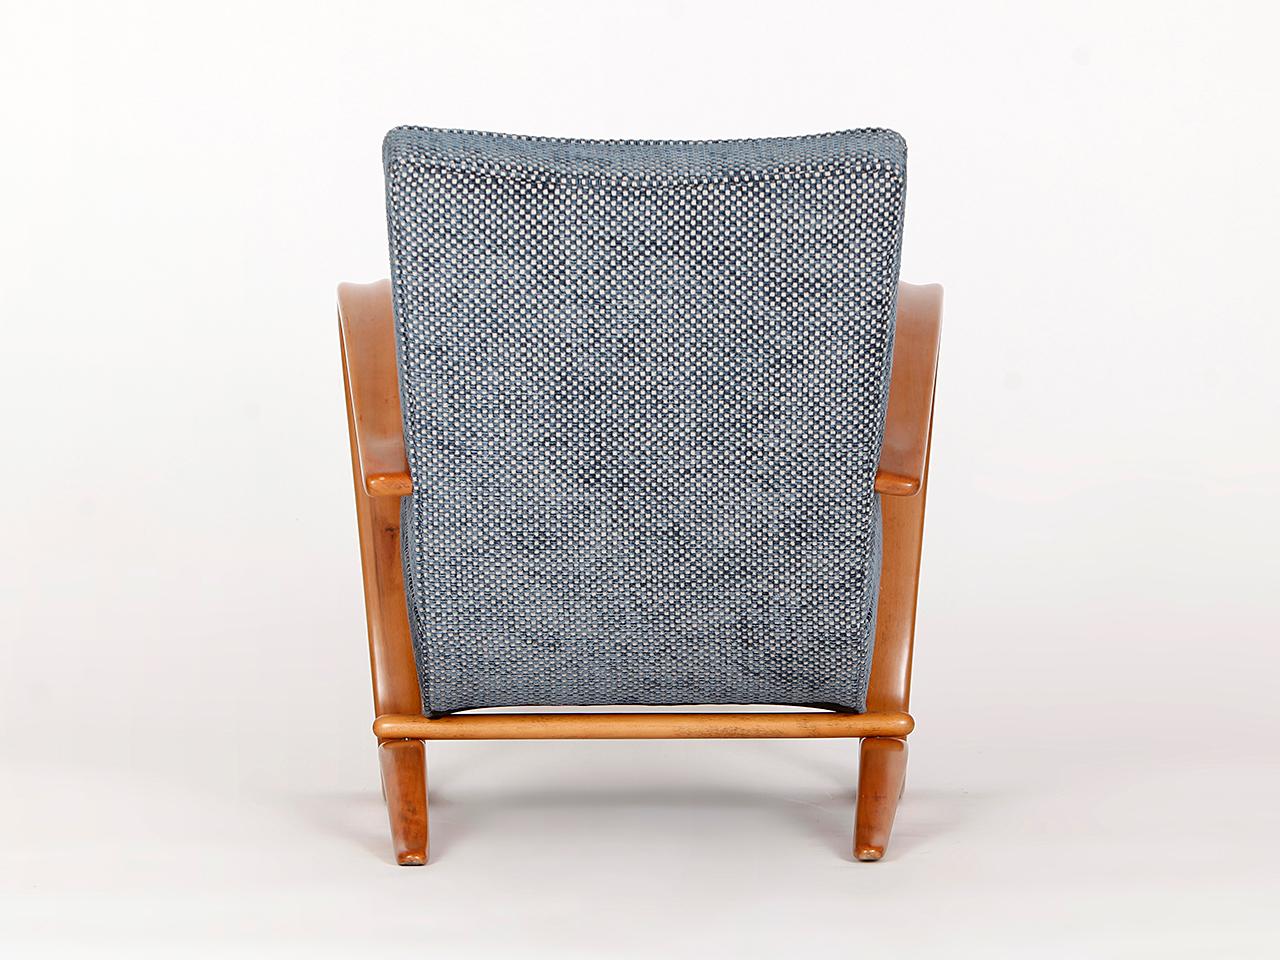 Art Deco H-269 Streamline Chair by Jindrich Halabala for Spojene UP Zavody, 1930s